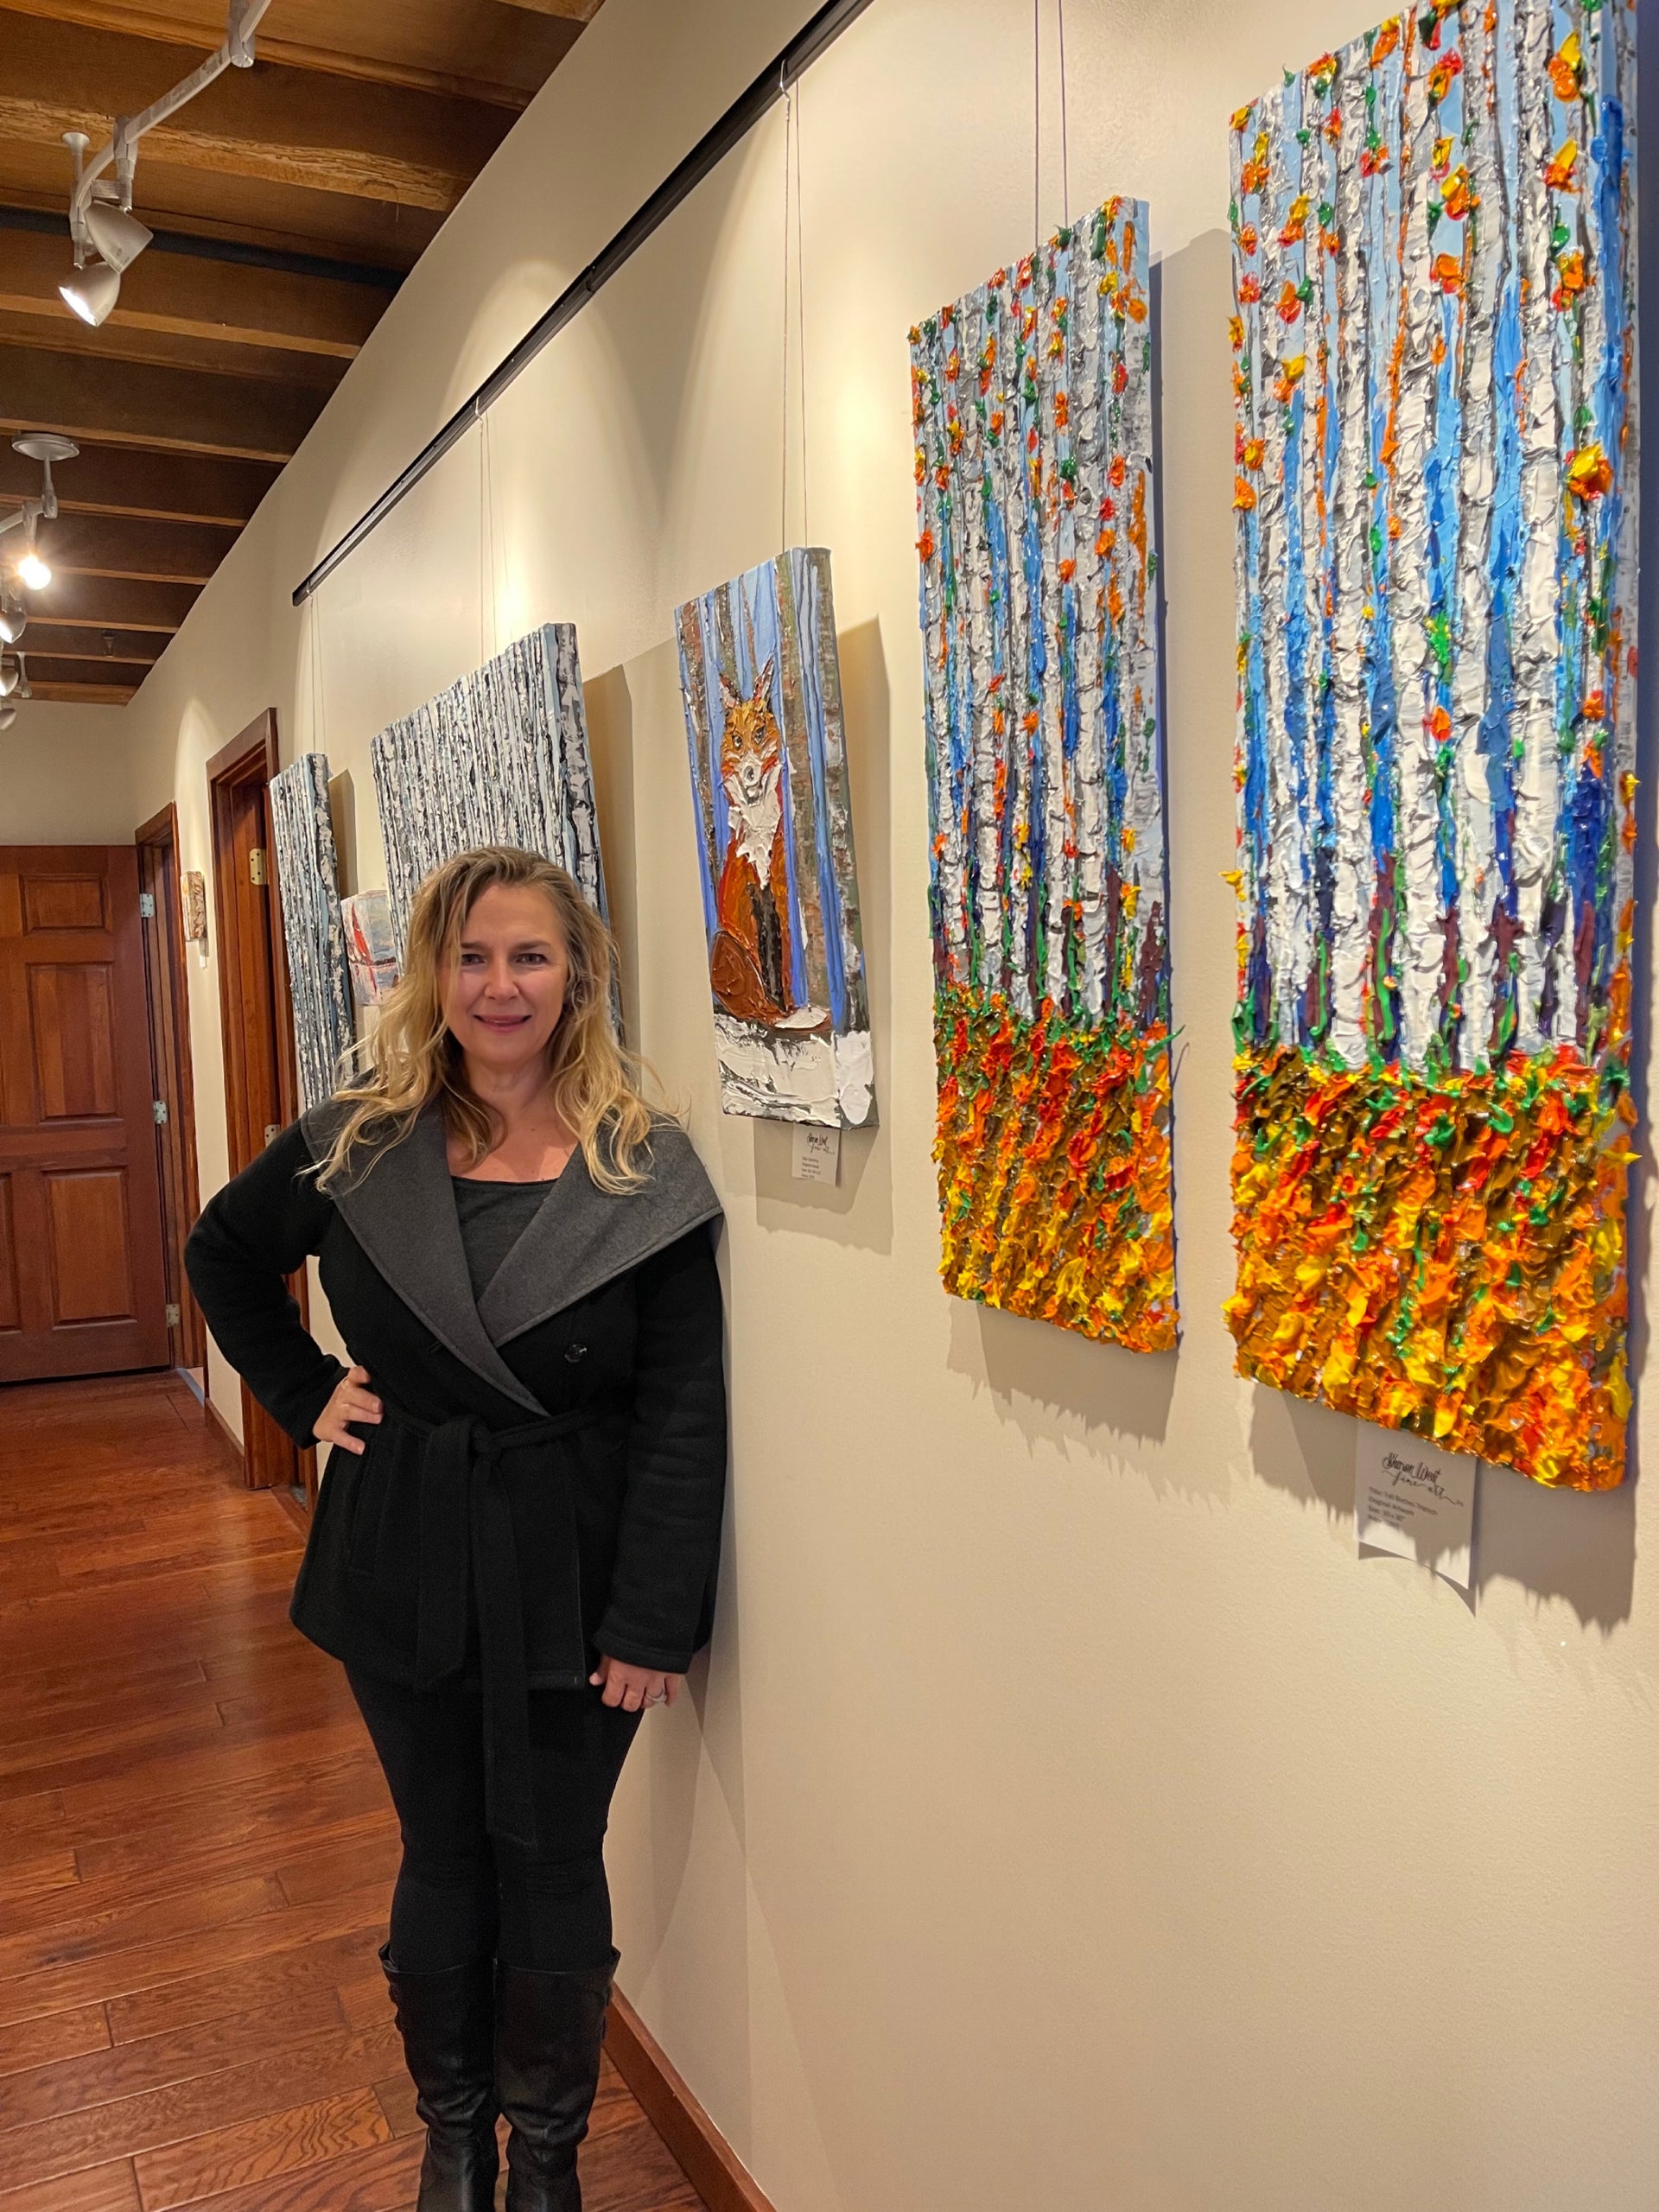 See my art at Visit Loudoun - Loudoun County's Visitor Center!